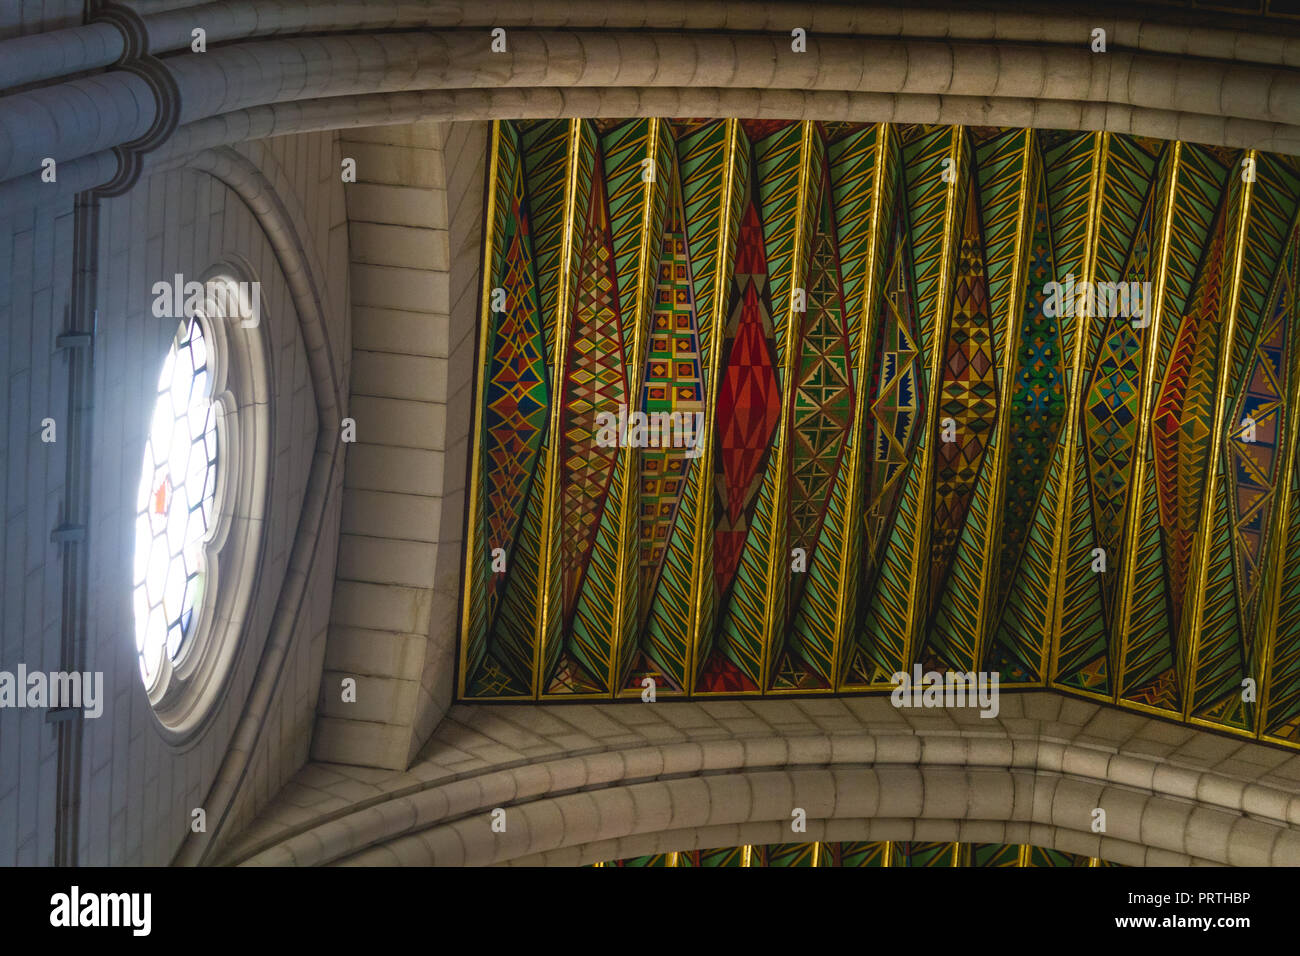 Plafond coloré et lumineux de la lumière de la fenêtre dans la cathédrale Almudena, Madrid Espagne Banque D'Images